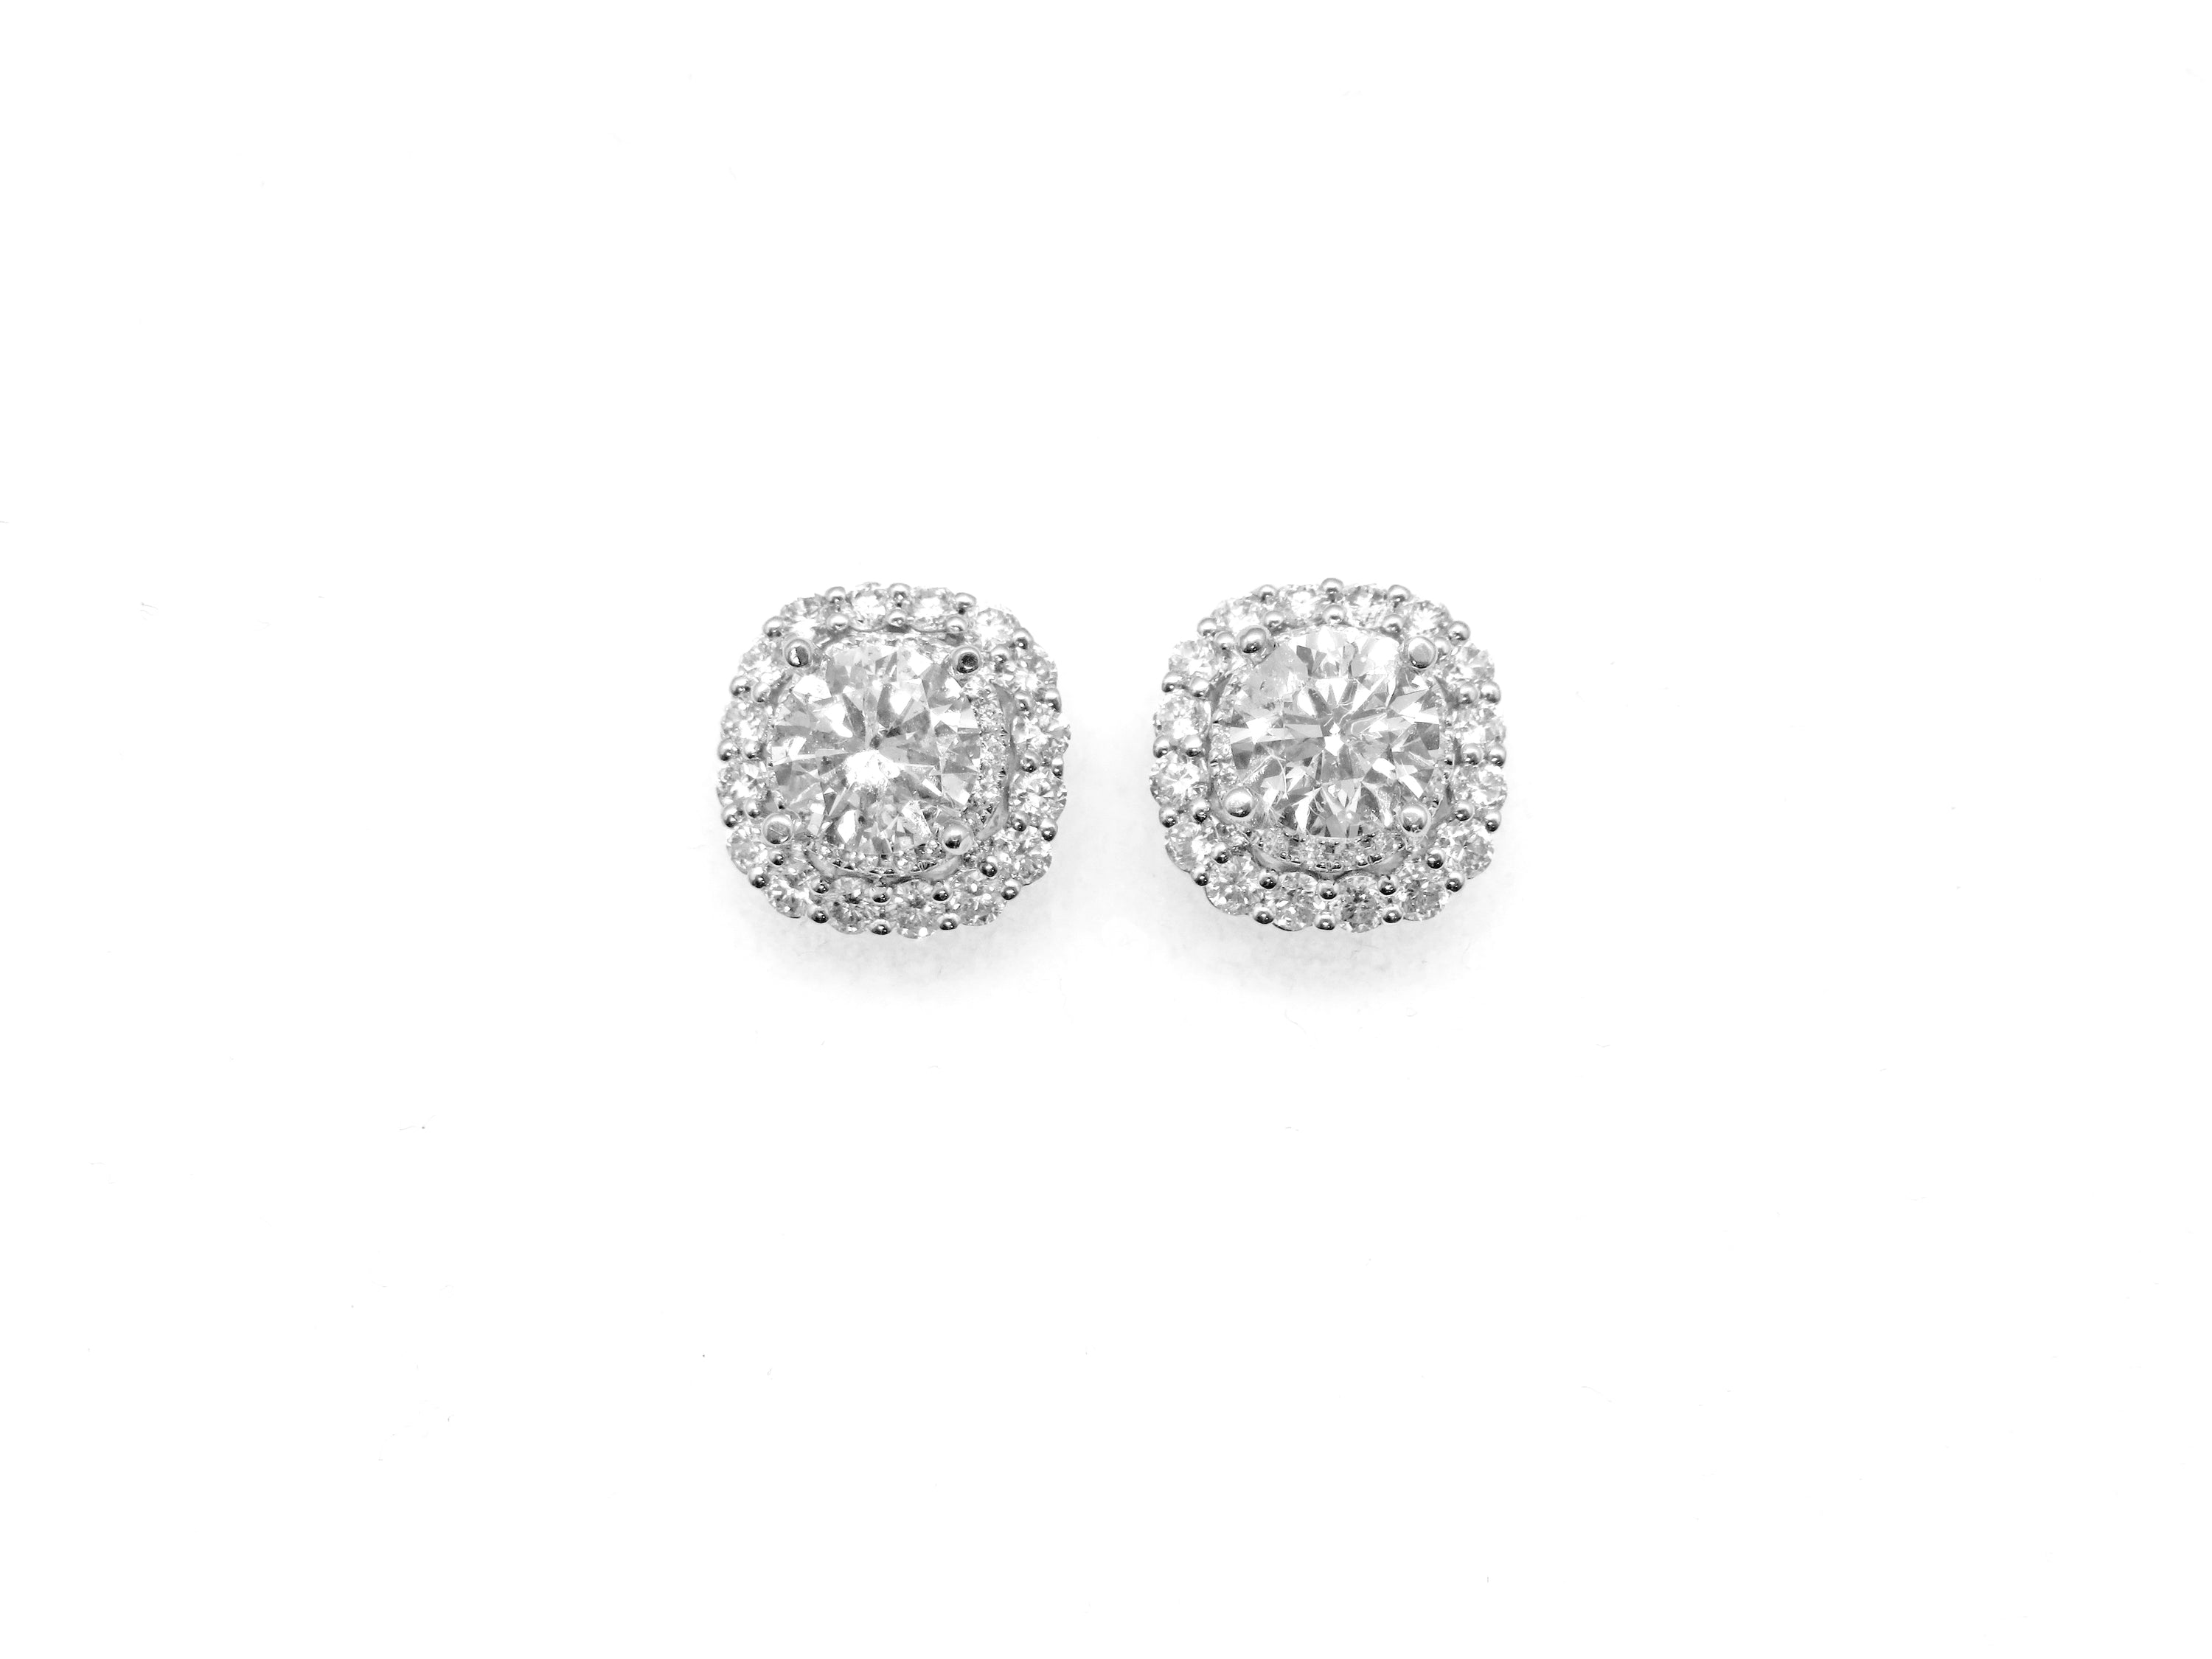 14kt White Gold Diamond Halo Earrings